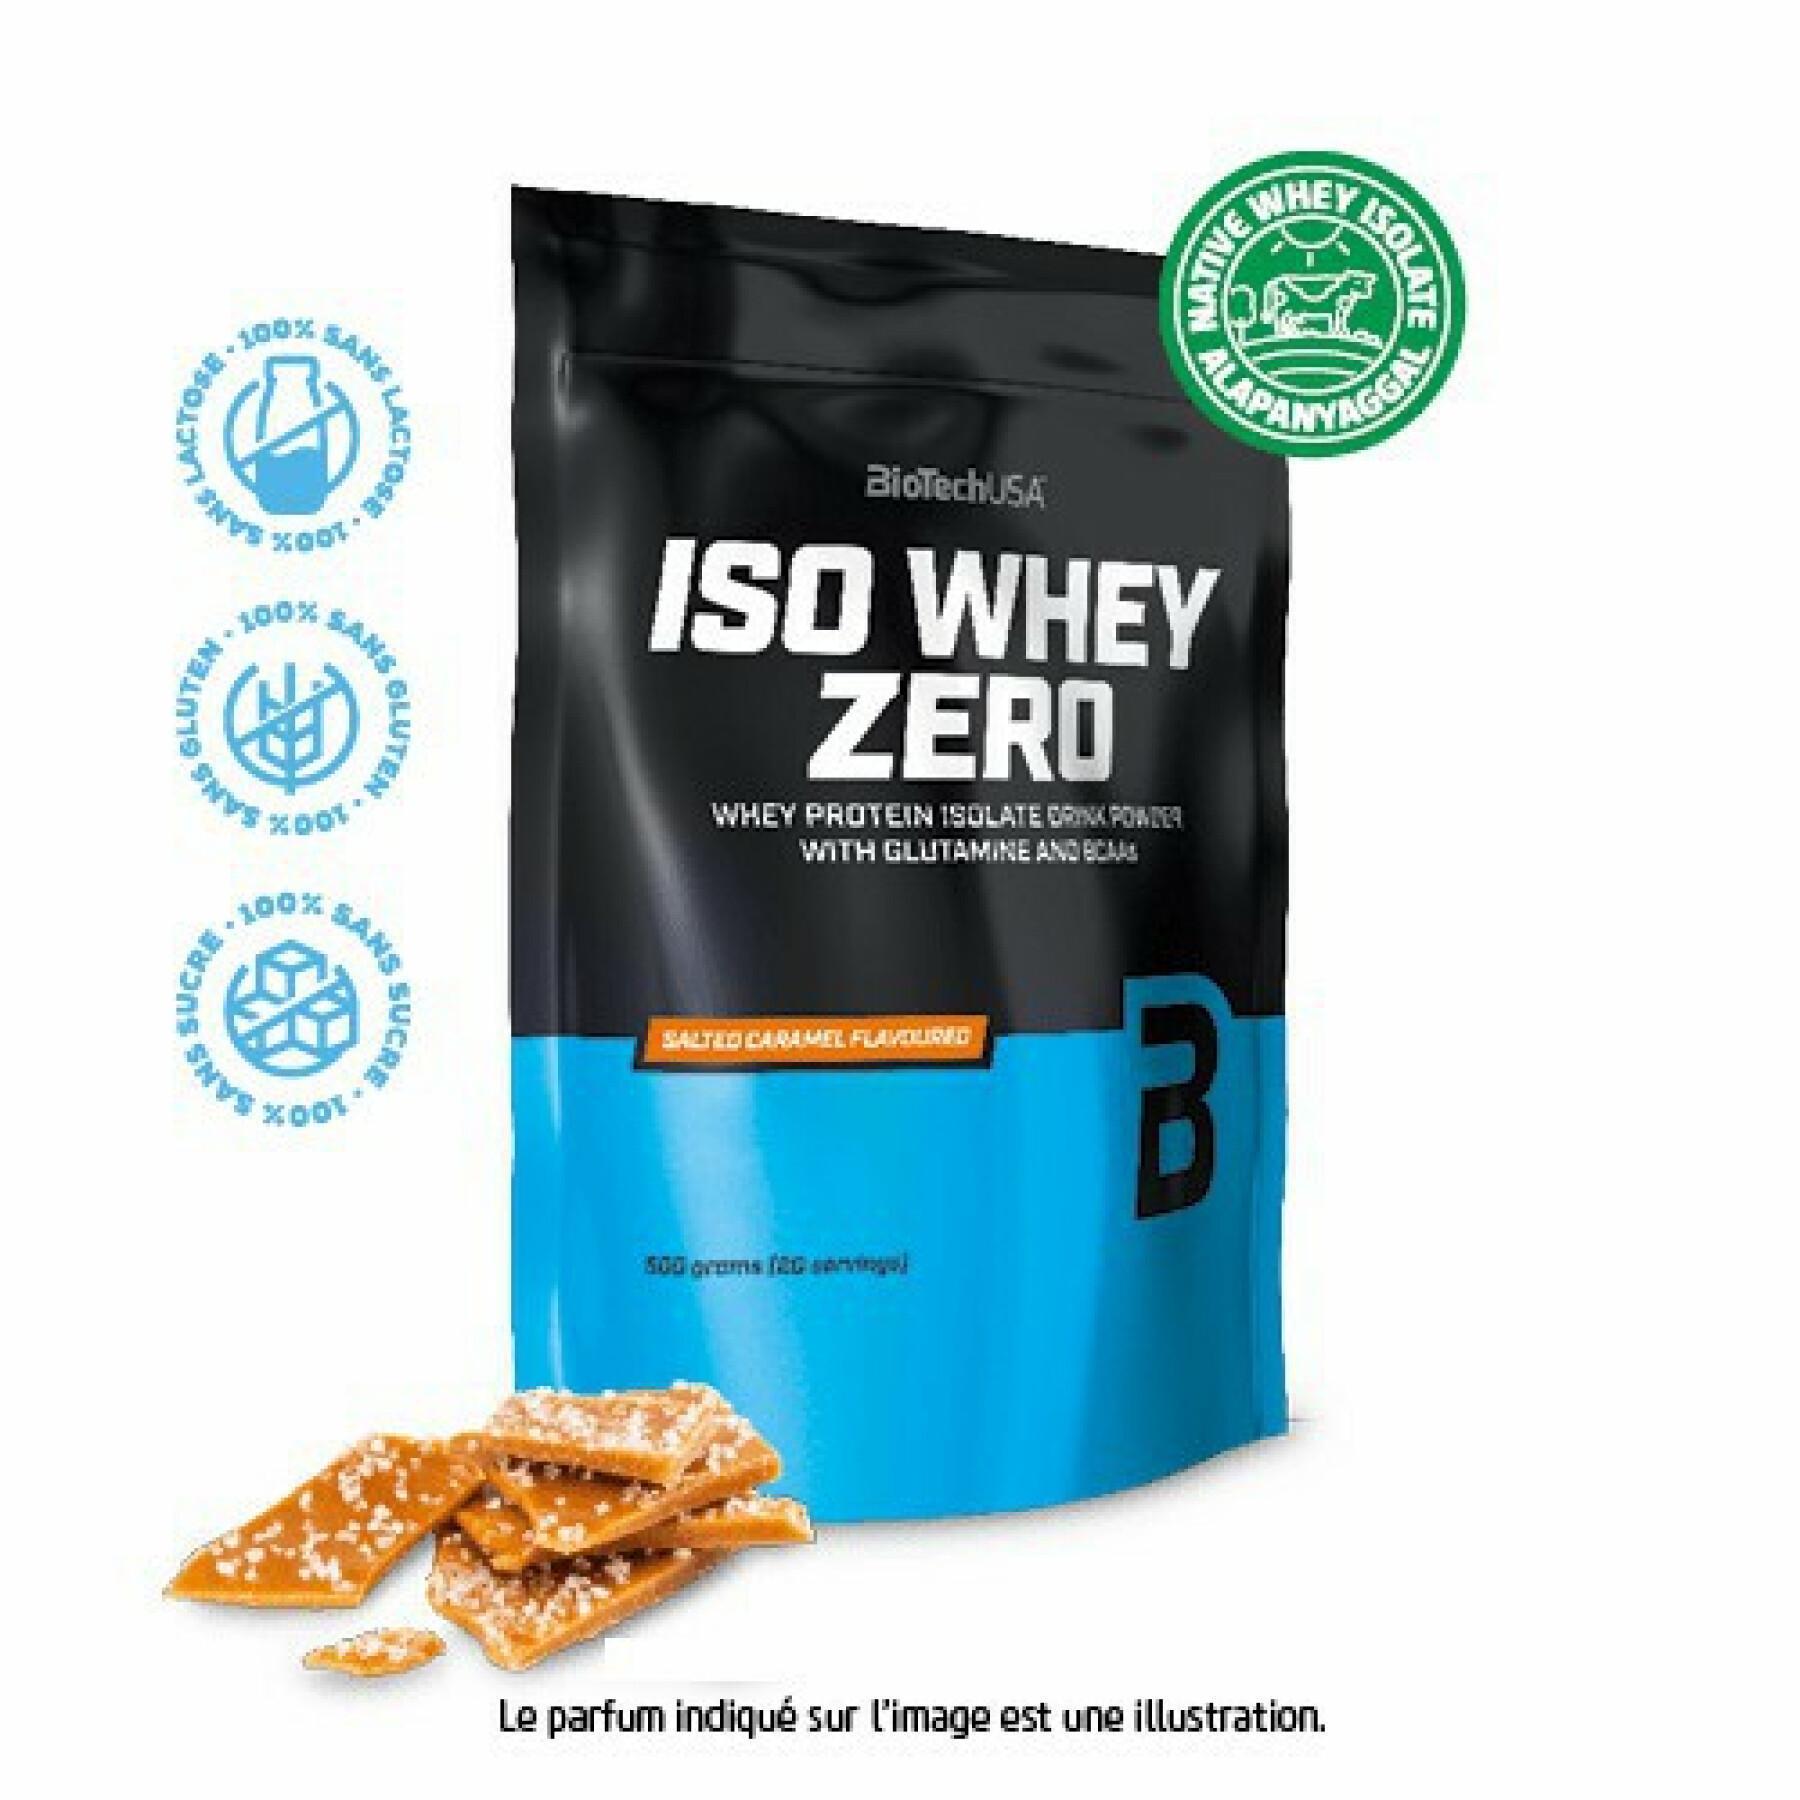 Confezione da 10 sacchetti di proteine Biotech USA iso whey zero lactose free - Caramello salato - 500g